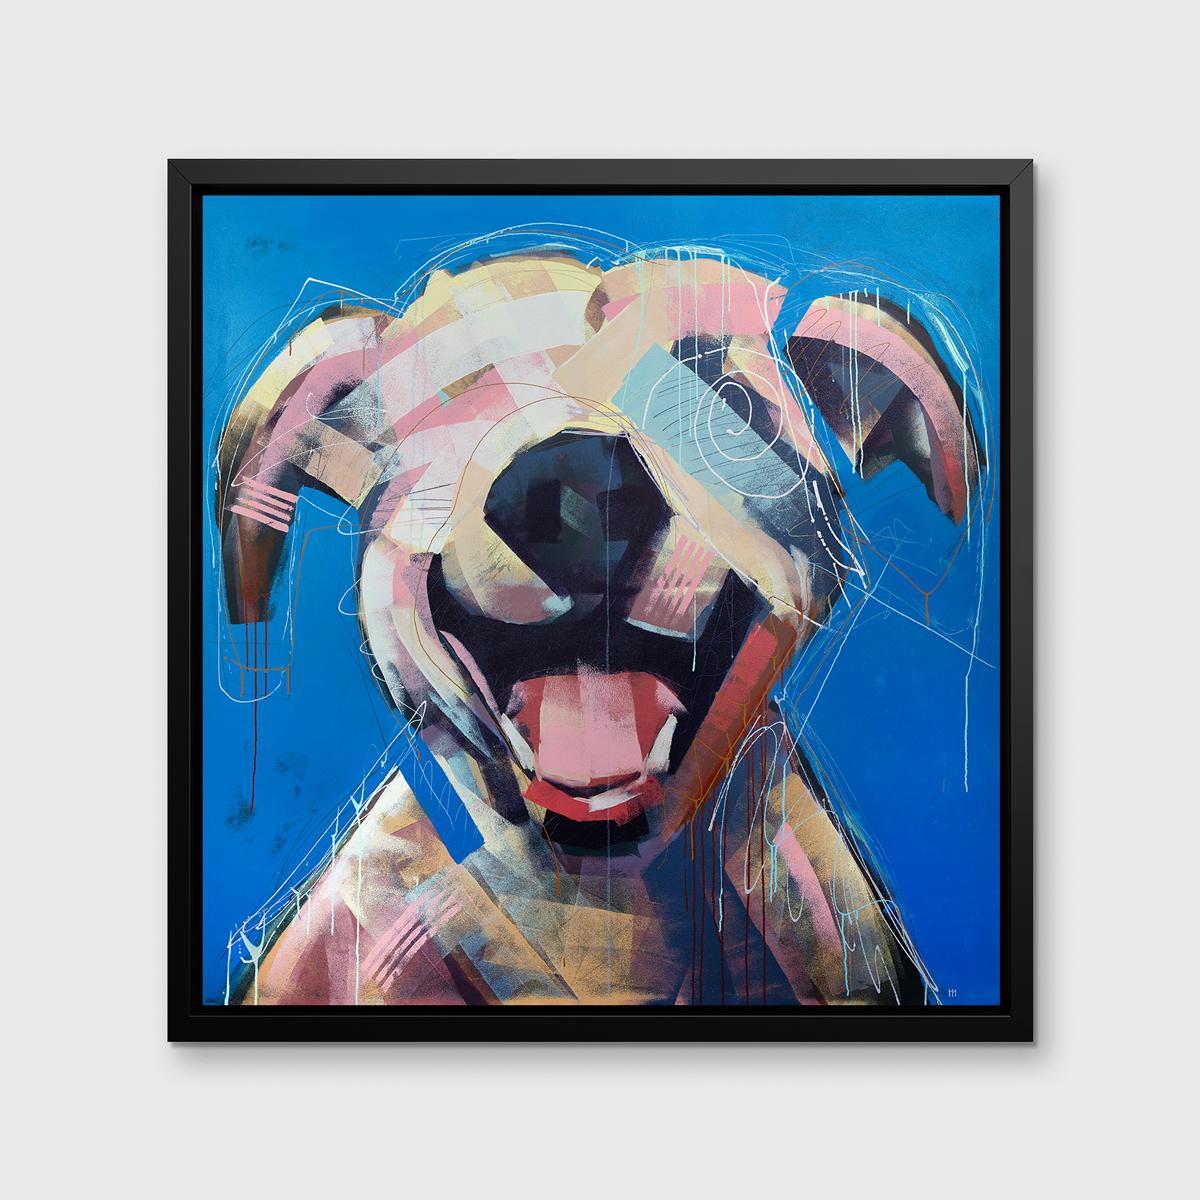 Cette impression abstraite d'un chien par l'artiste Russell Miyaki présente une palette légère et colorée et des éléments libres, expressifs et ludiques pour créer une composition énergique d'un chien à la gueule ouverte, sur un fond bleu vif.